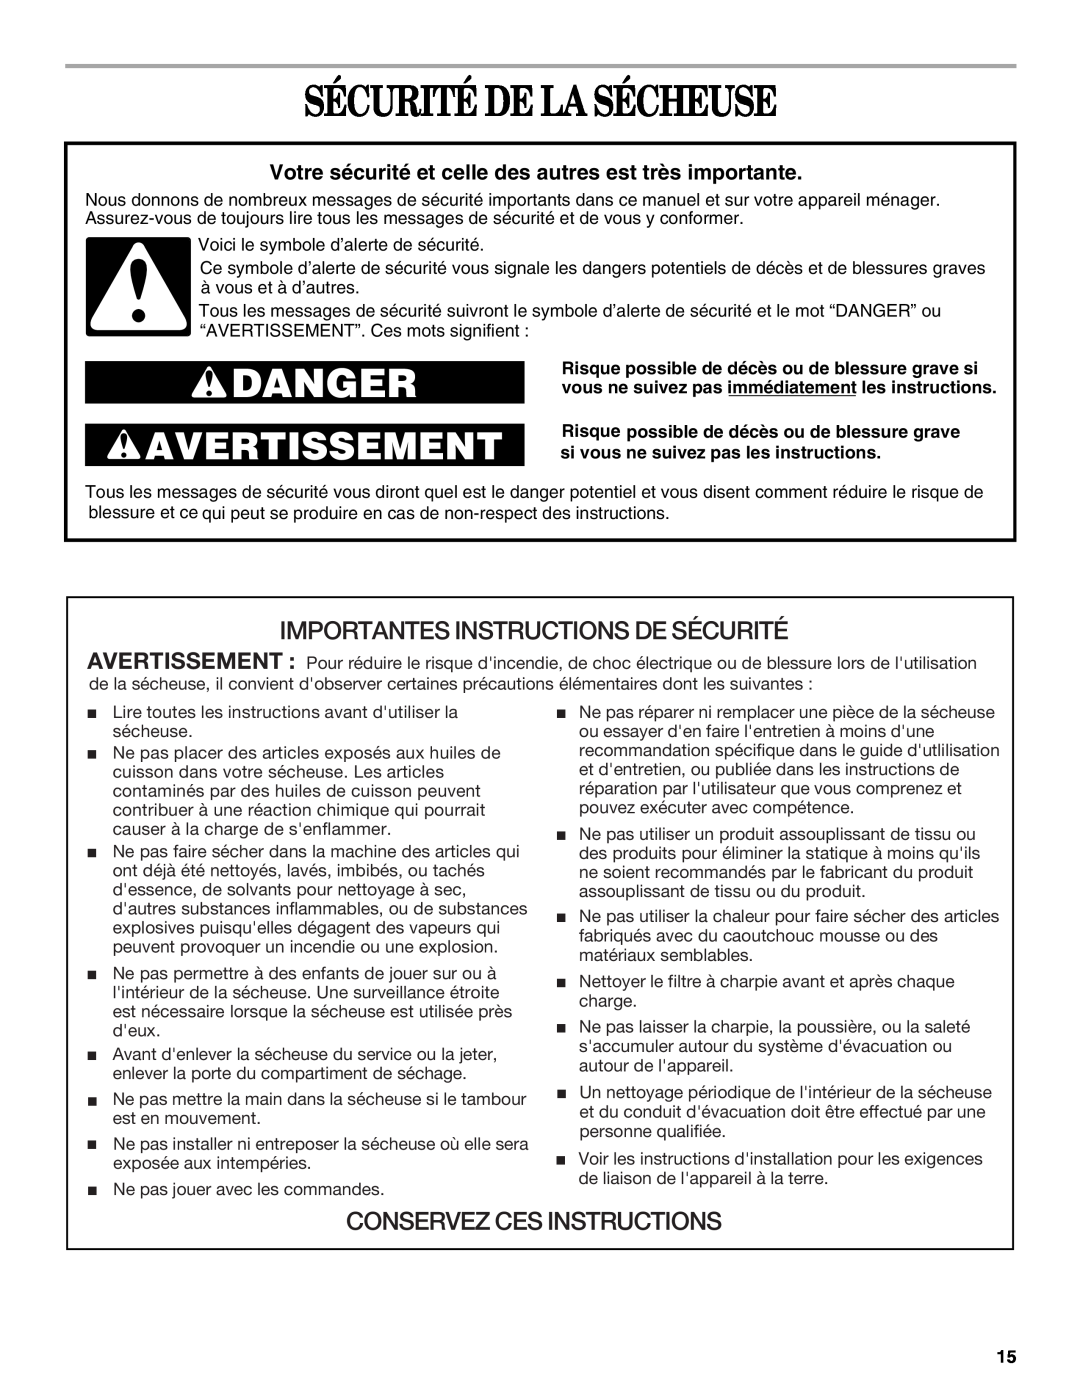 Whirlpool 3406879 manual Sécurité De La Sécheuse, Importantes Instructions De Sécurité, Conservez Ces Instructions, Danger 